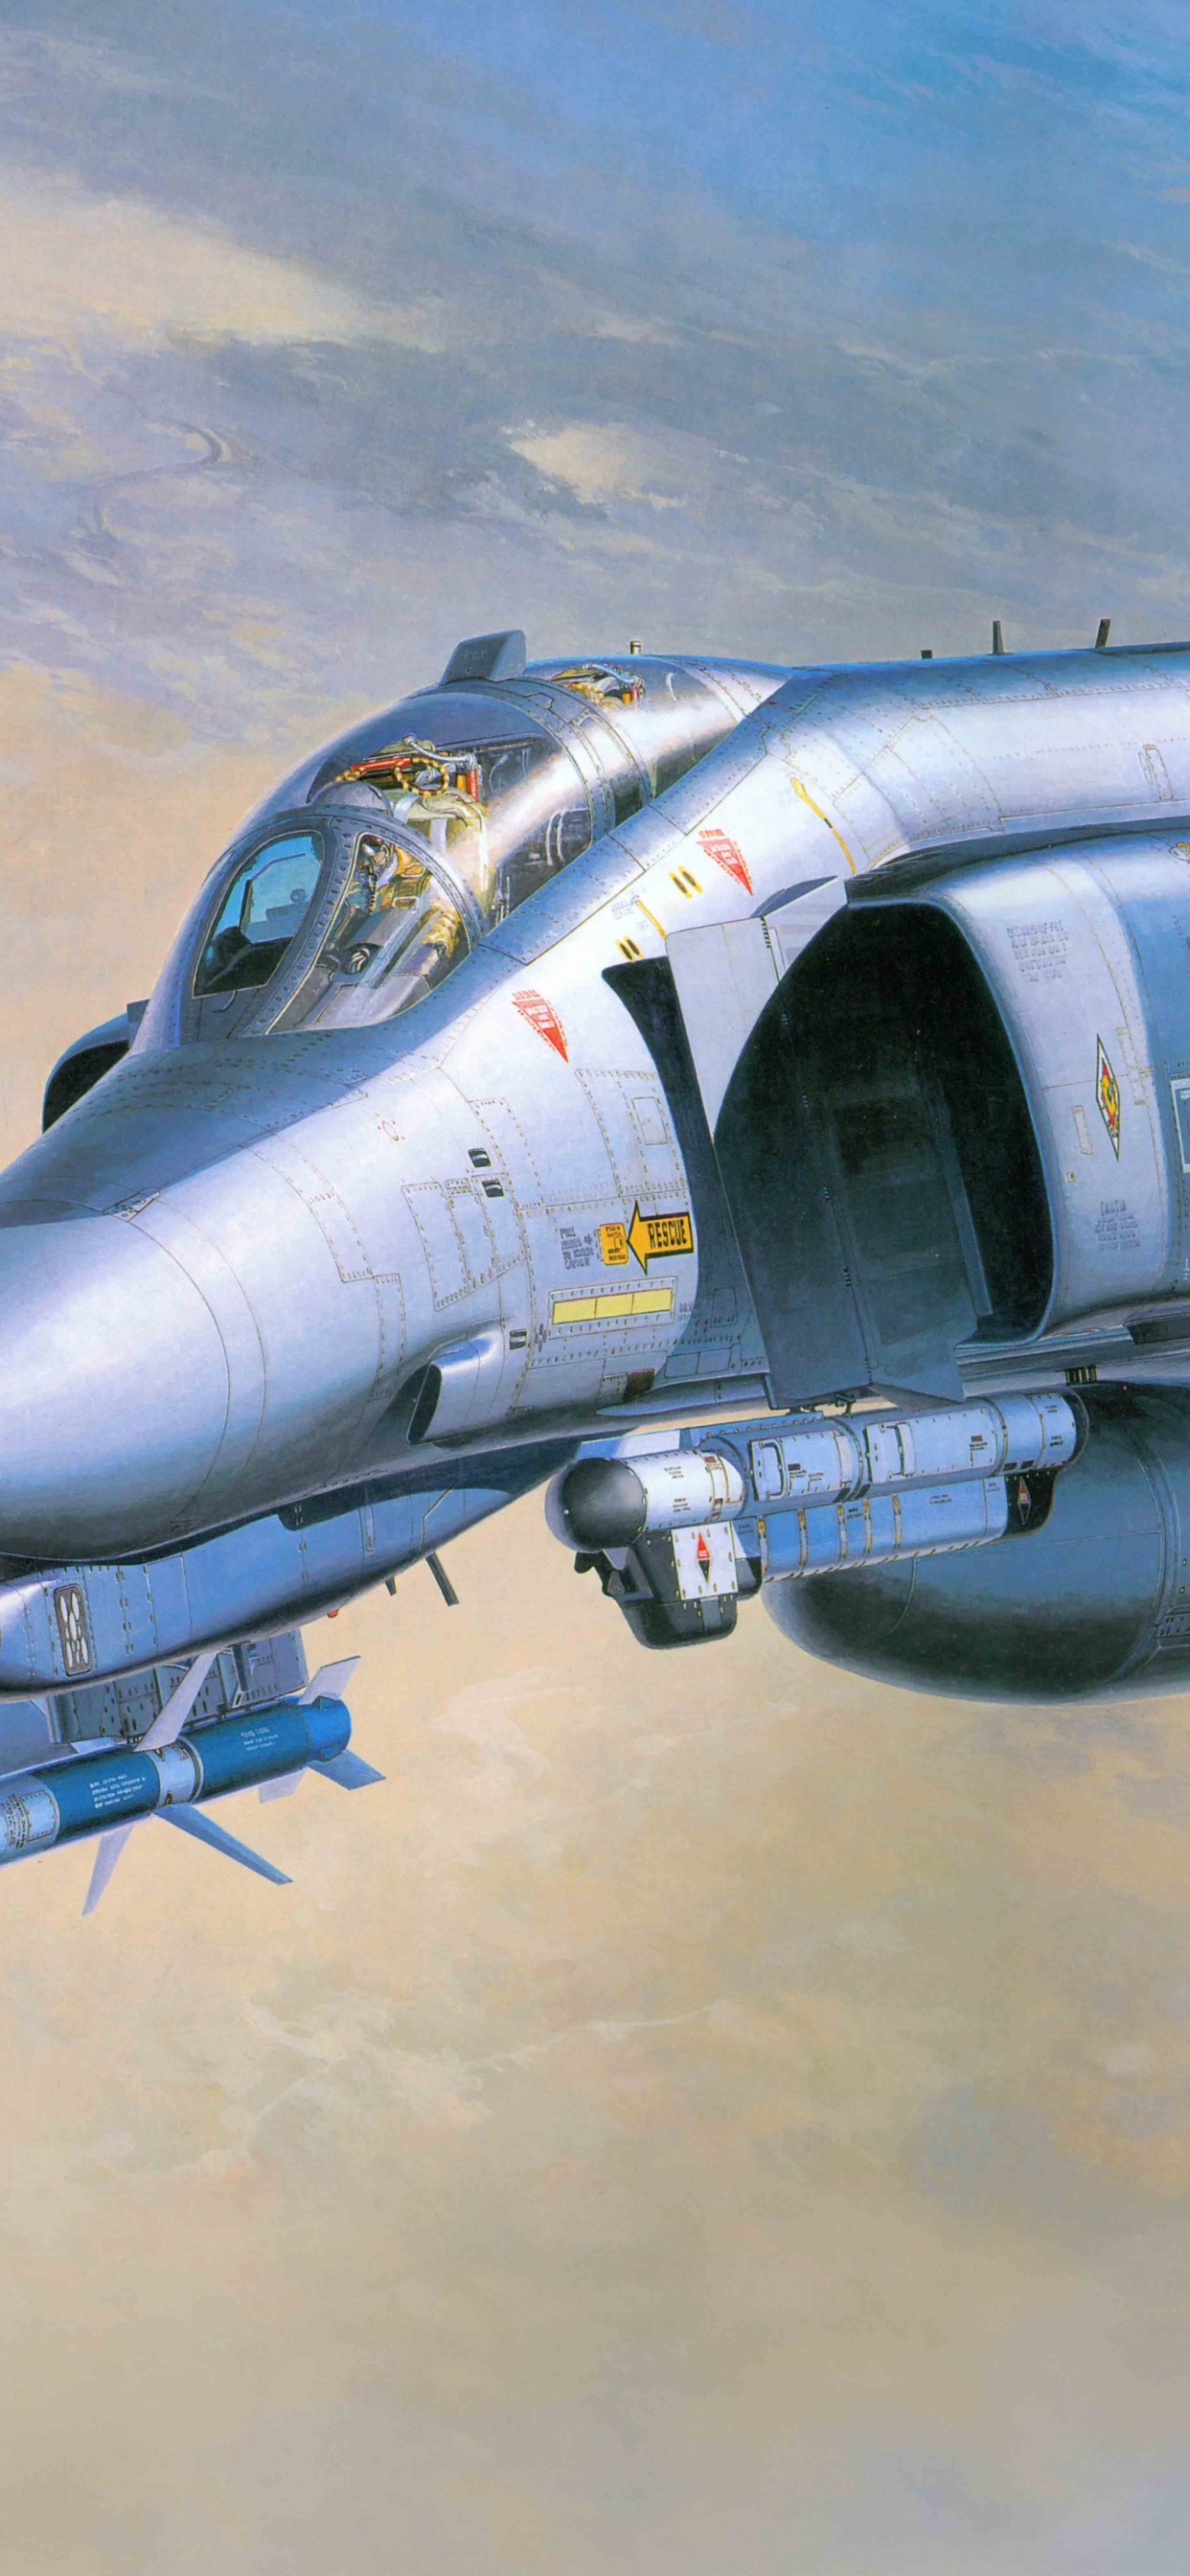 麦克道格拉斯F-4幽灵II, 长谷川公司, 喷气式飞机, 航空, 军用飞机 壁纸 1242x2688 允许